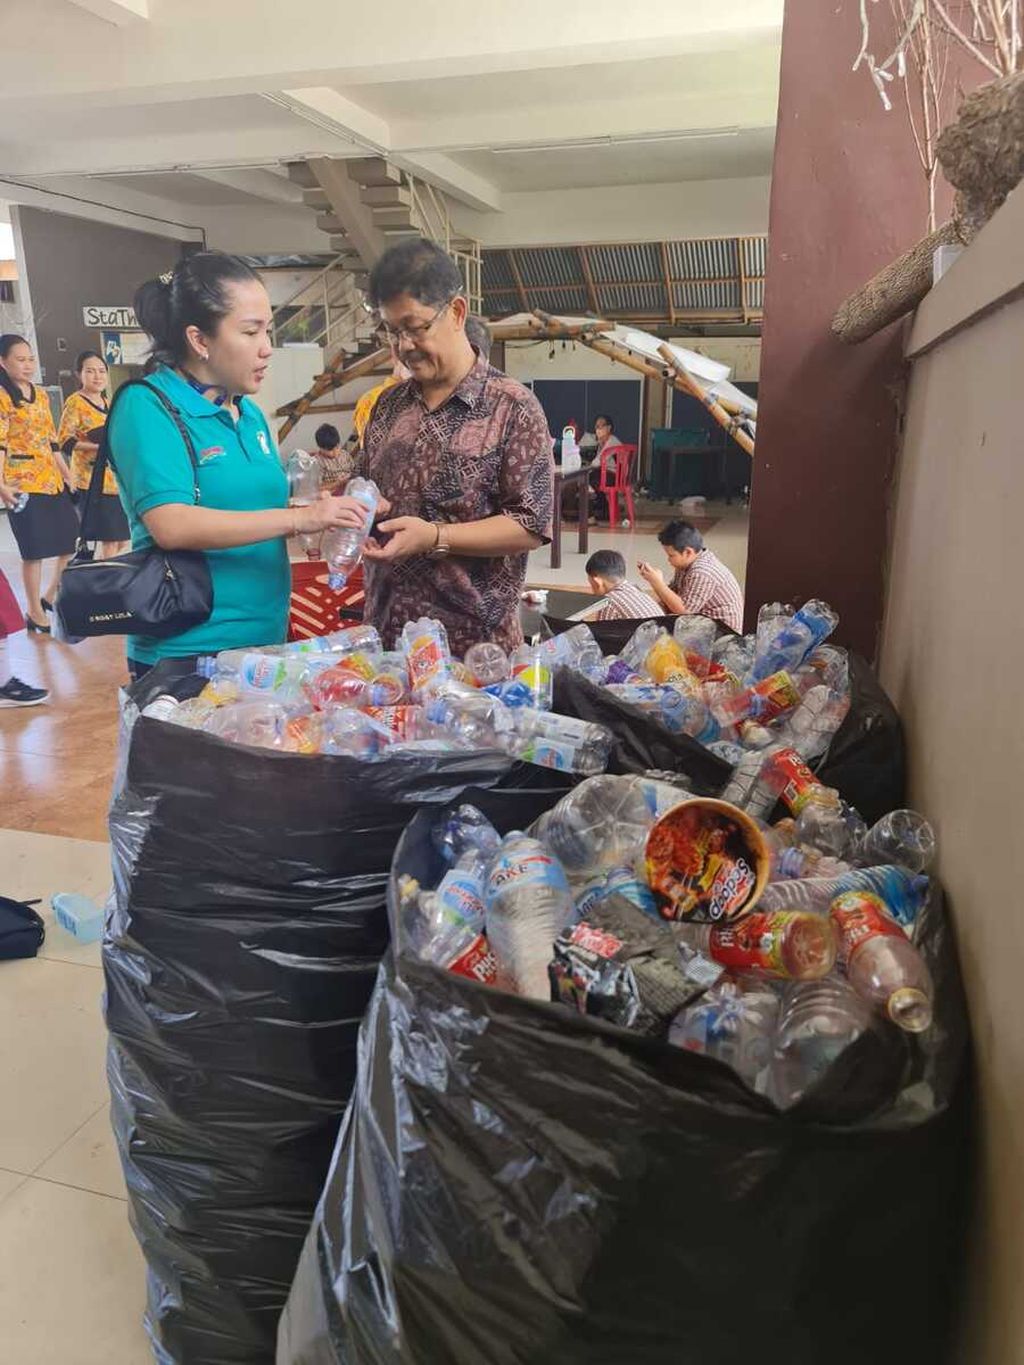 Di Sulawesi Utara, gerakan mengatasi sampah dan mengolah menjadi barang bernilai juga dilakukan Amelia Tungka. Sejak tahun 2018, ia merintis gerakan mengumpulkan sampah dan mendaur ulang sampah-sampah di Kota Manado. 